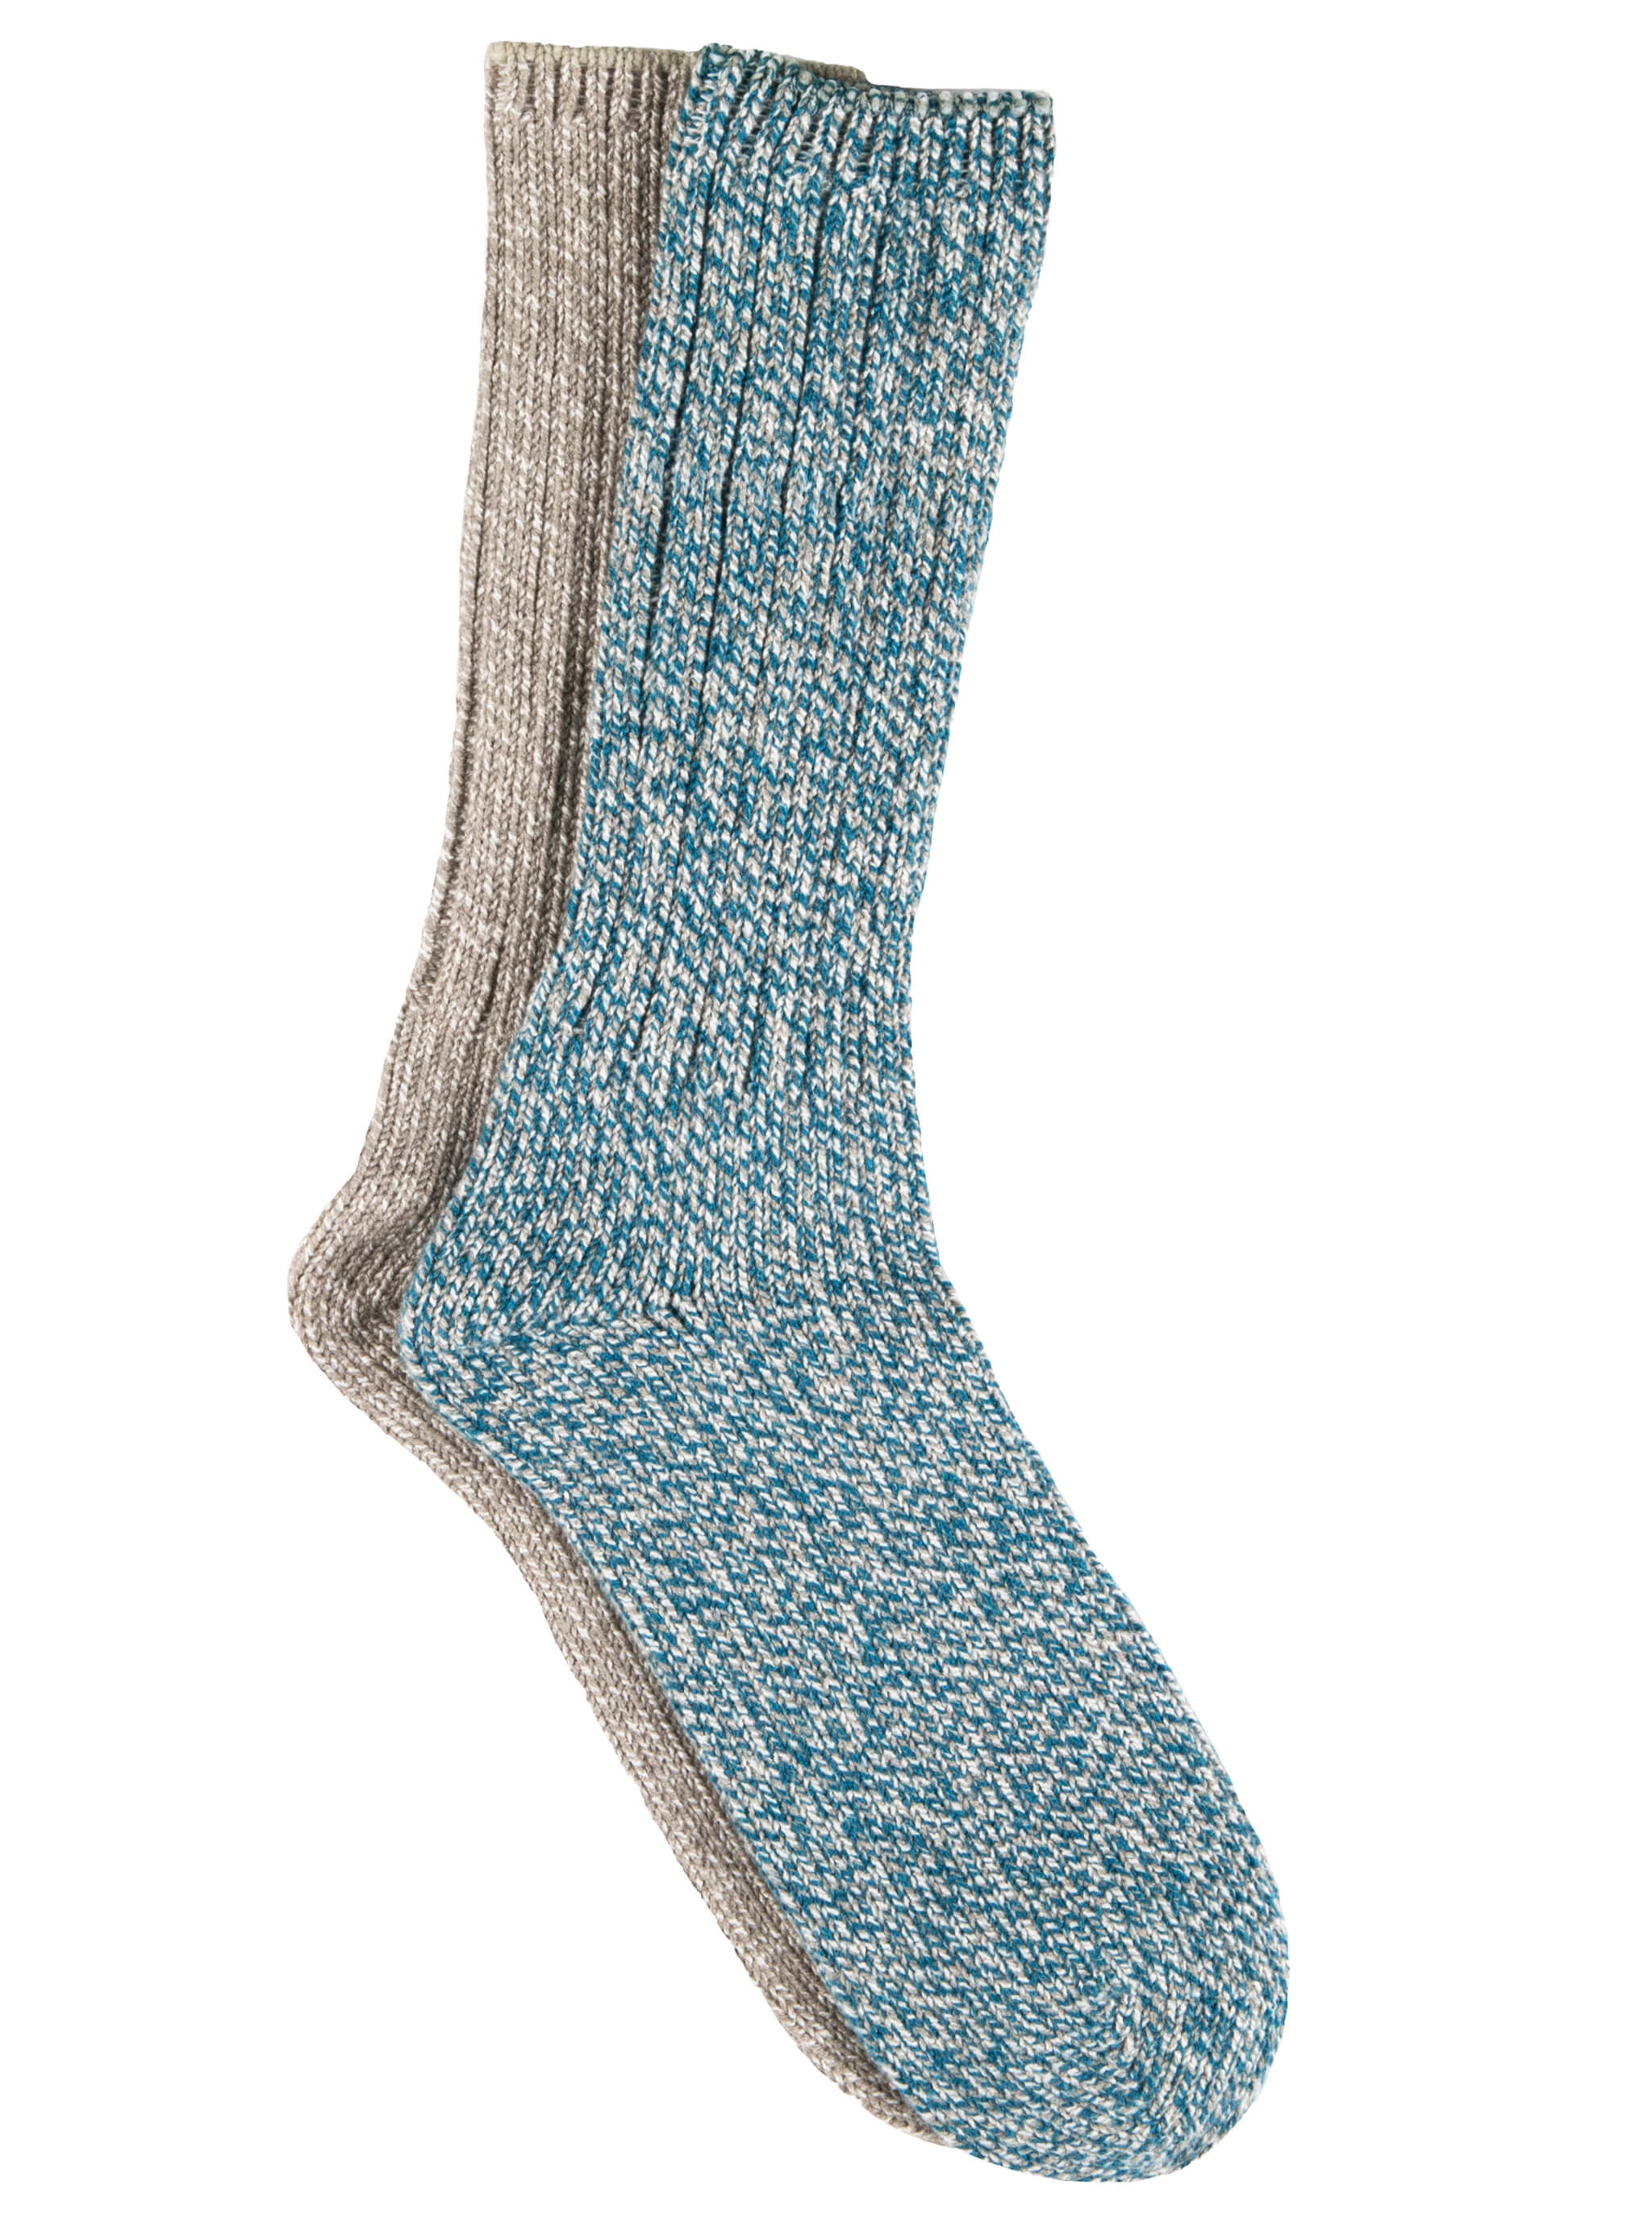 women's marled socks